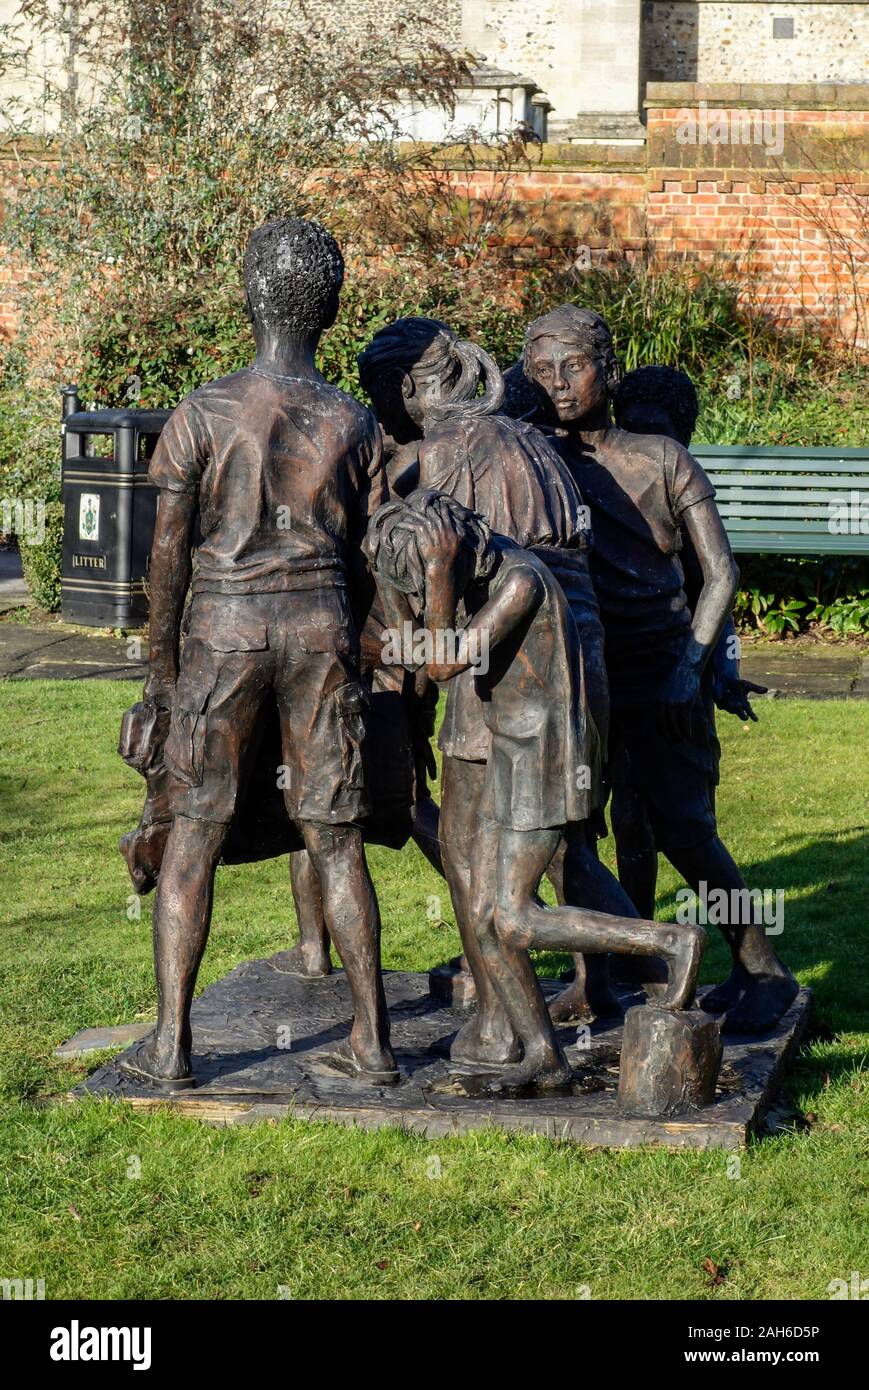 Eine lebensgroße Skulptur von sechs Kindern in Posen in Anlehnung an die Bürger von Calais von Auguste Rodin hat in Saffron Walden, Essex, England vorgestellt worden Stockfoto